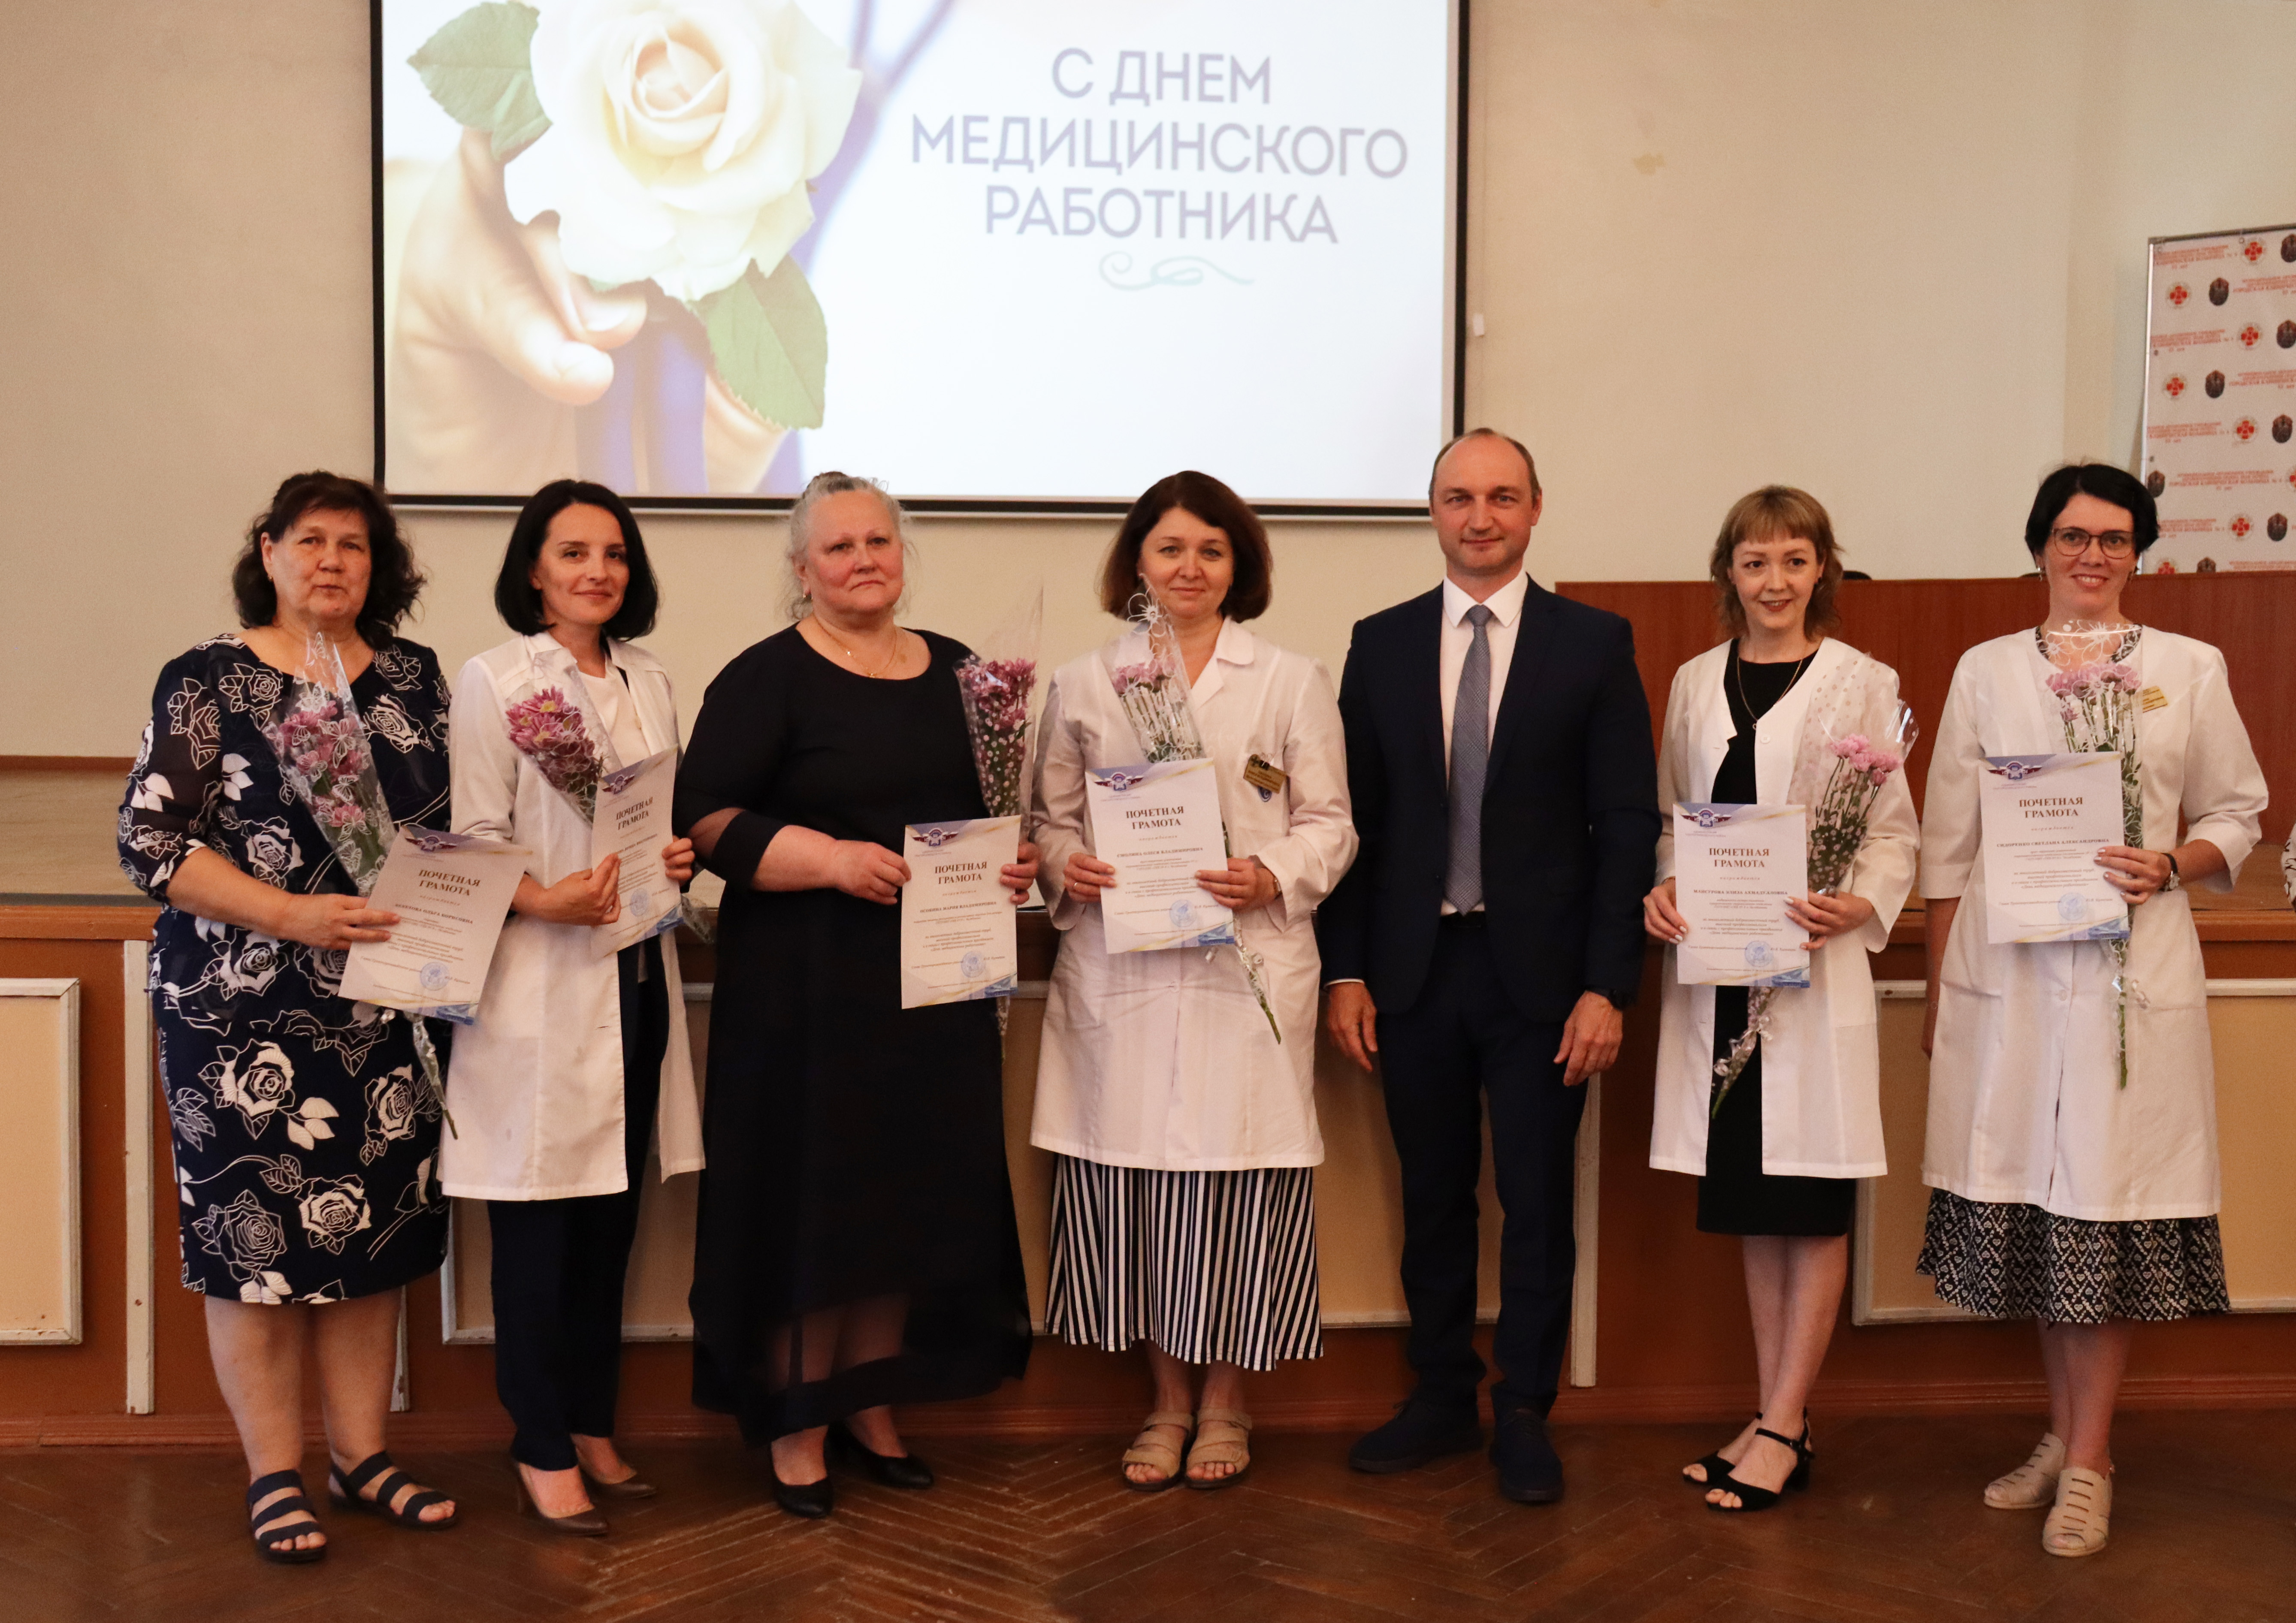 Медицинских работников Тракторозаводского района поздравили с профессиональным праздником